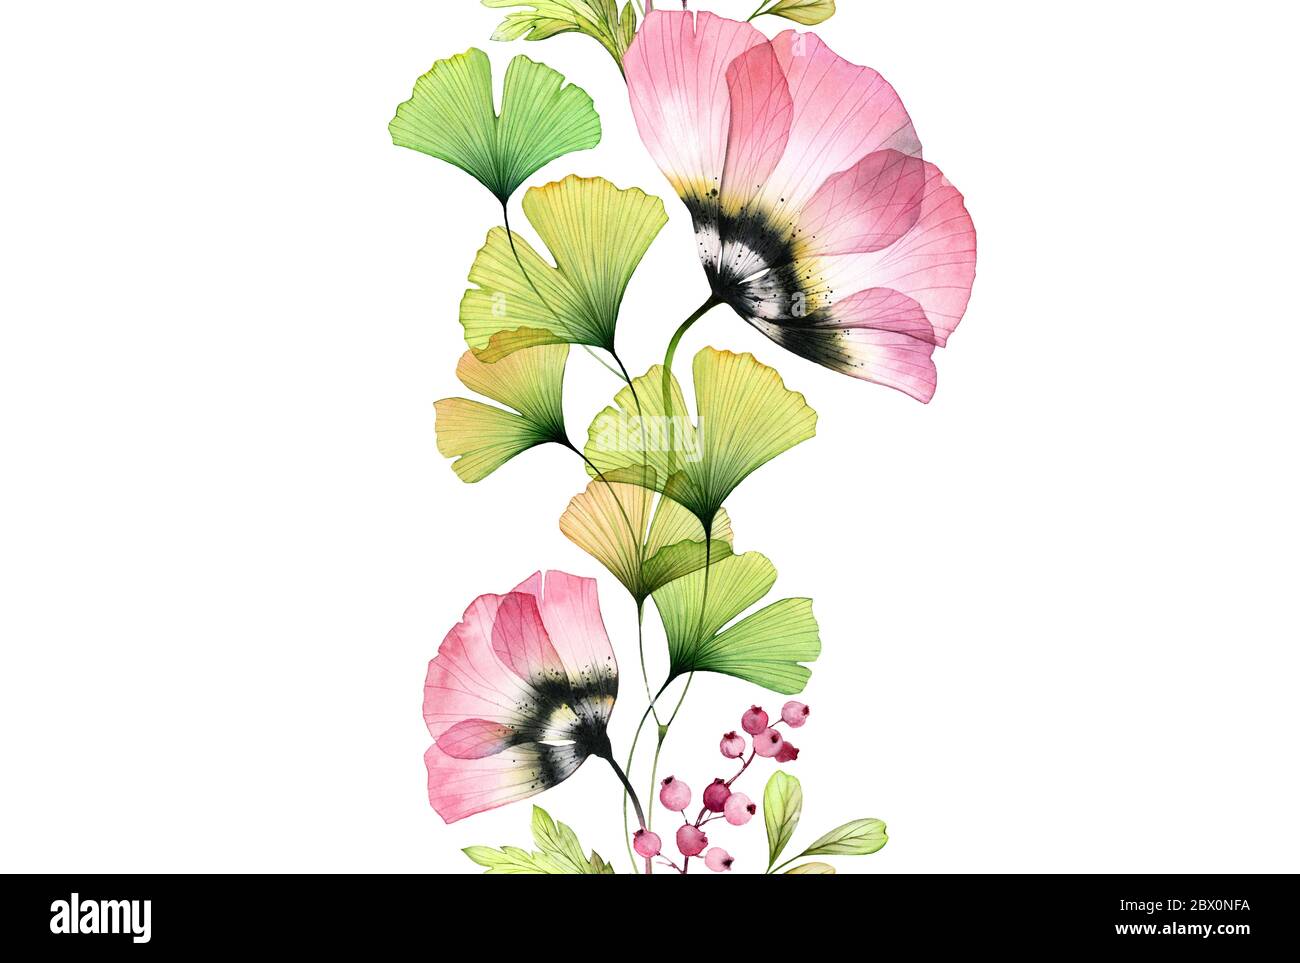 Tulipes aquarelle bordure sans couture. Répétition verticale répétitive. Fleurs roses abstraites avec des éves de ginkgo sur blanc. Illustration botanique pour cartes Banque D'Images